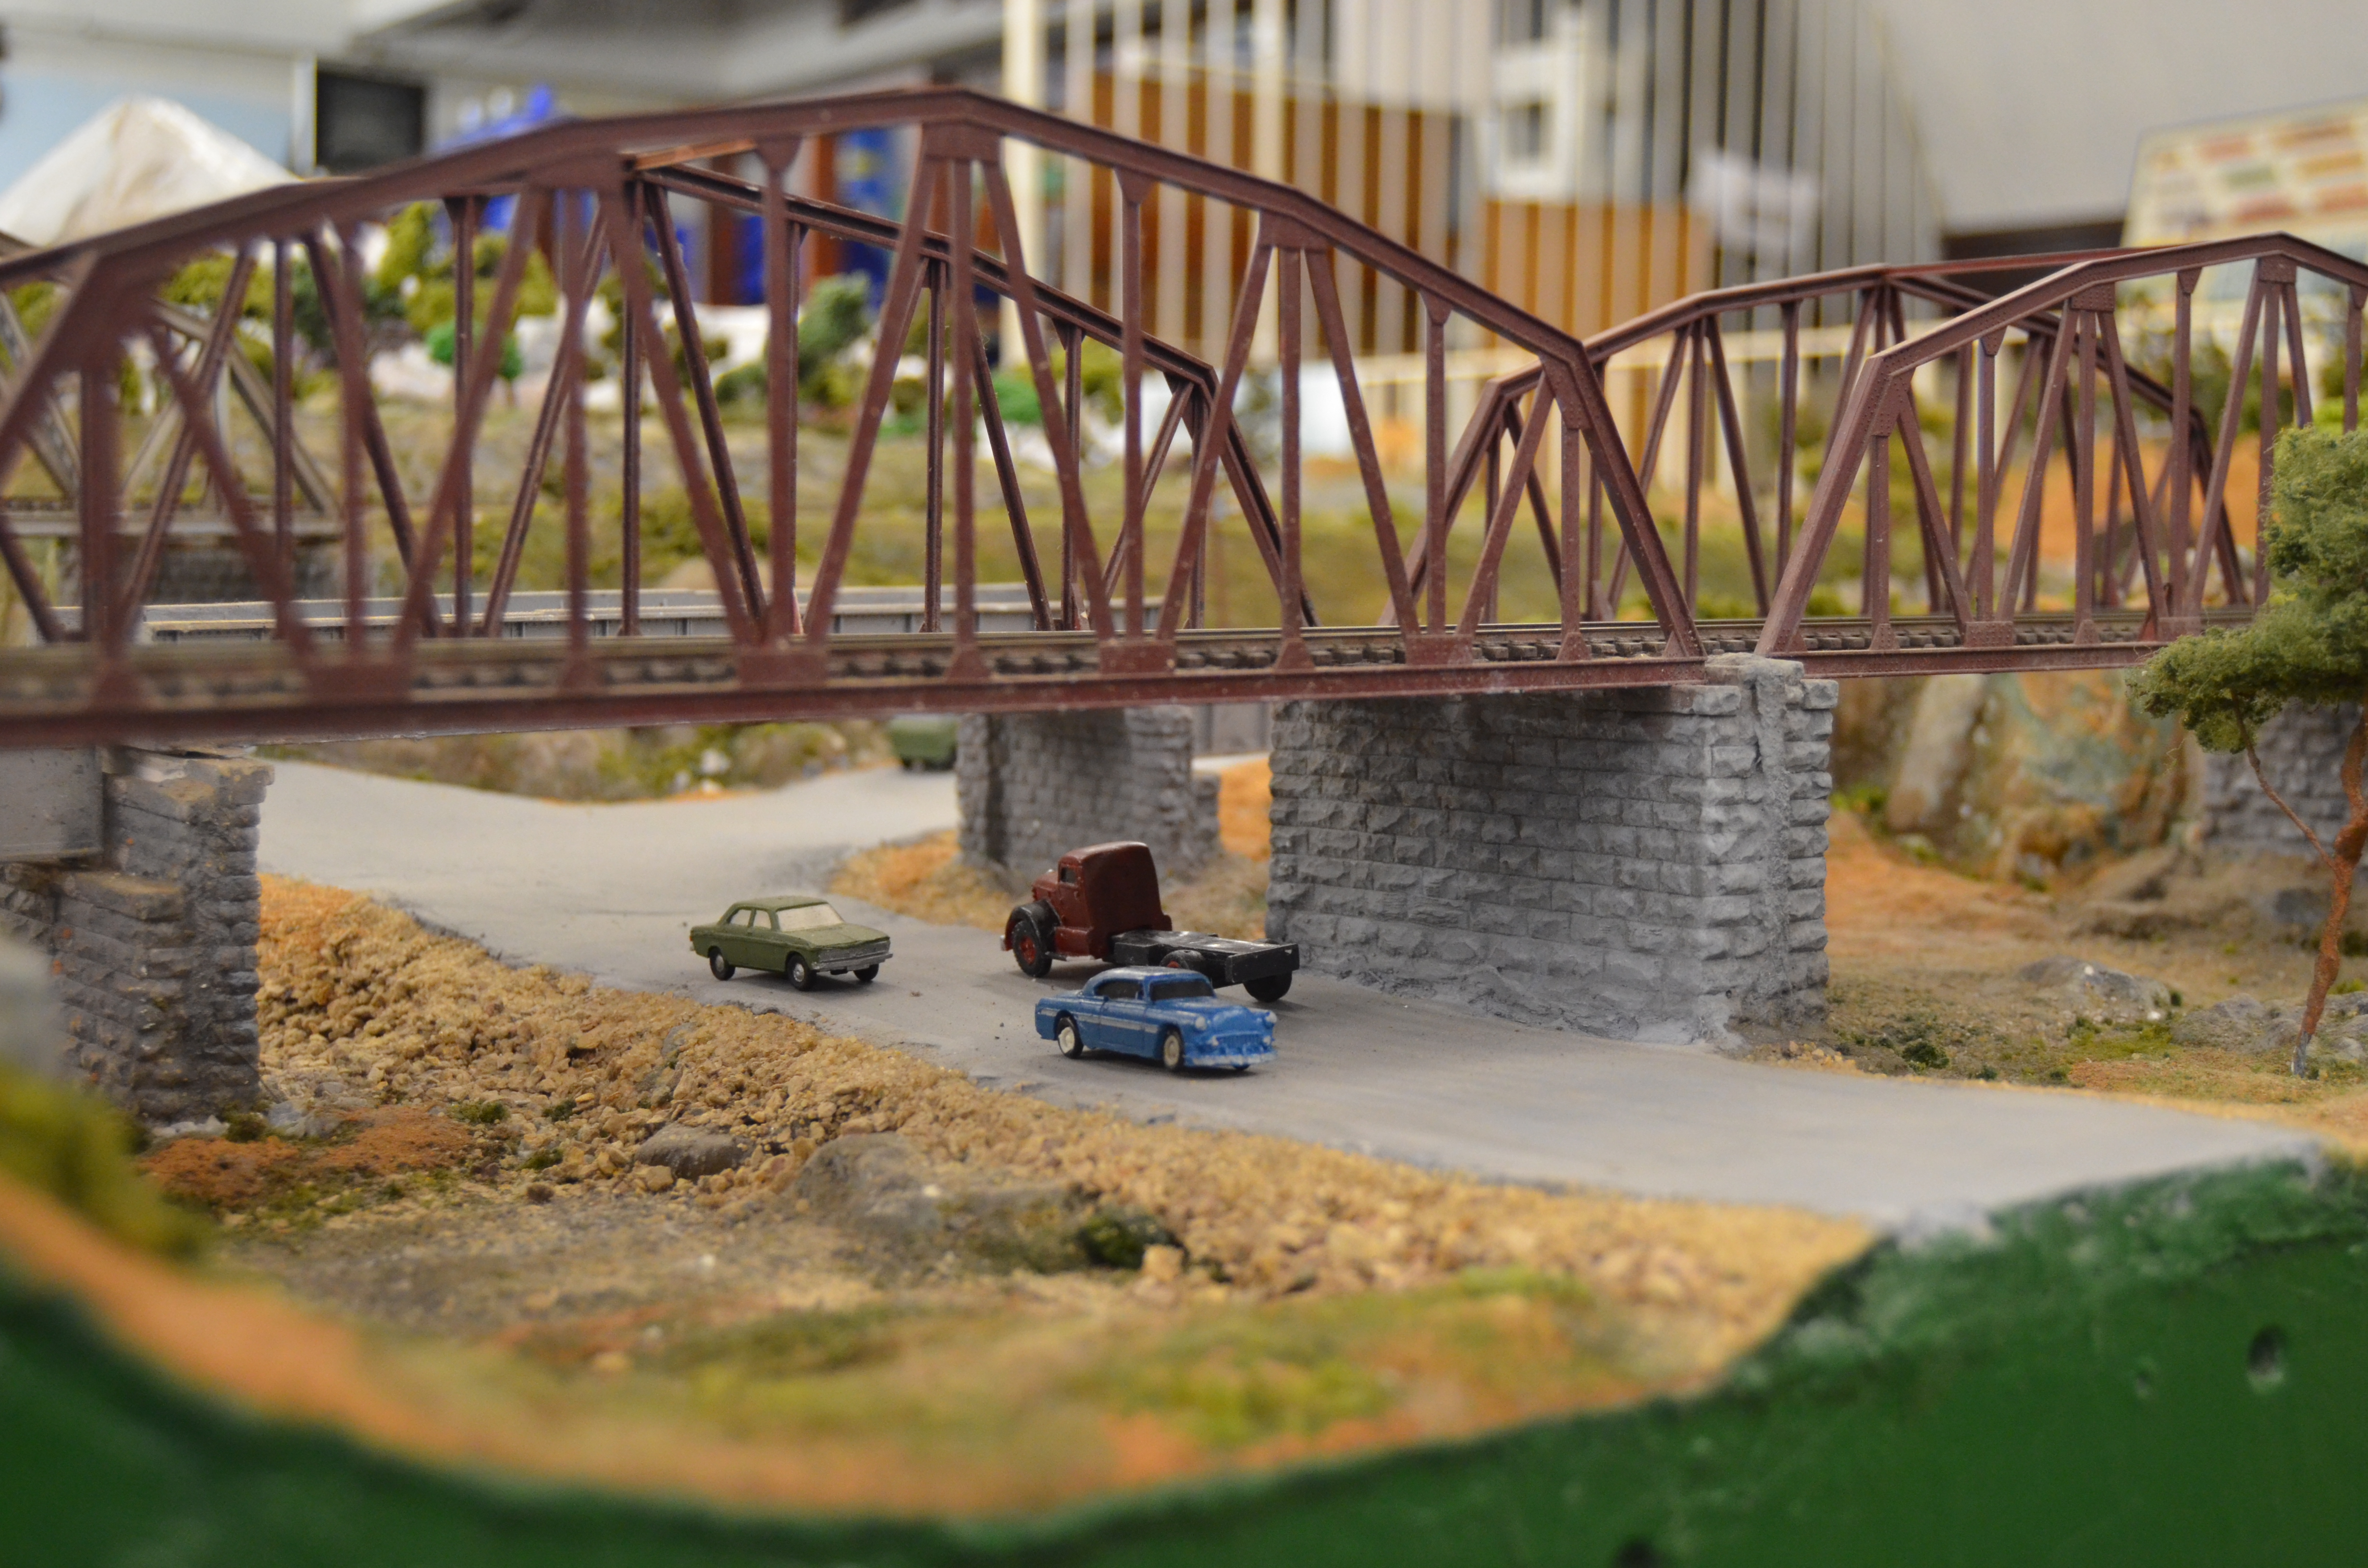 Na imagem, miniaturas de carros em baixo da ponte. A maquete de Ferromodelismo está localizado no Modelódromo do Ibirapuera.